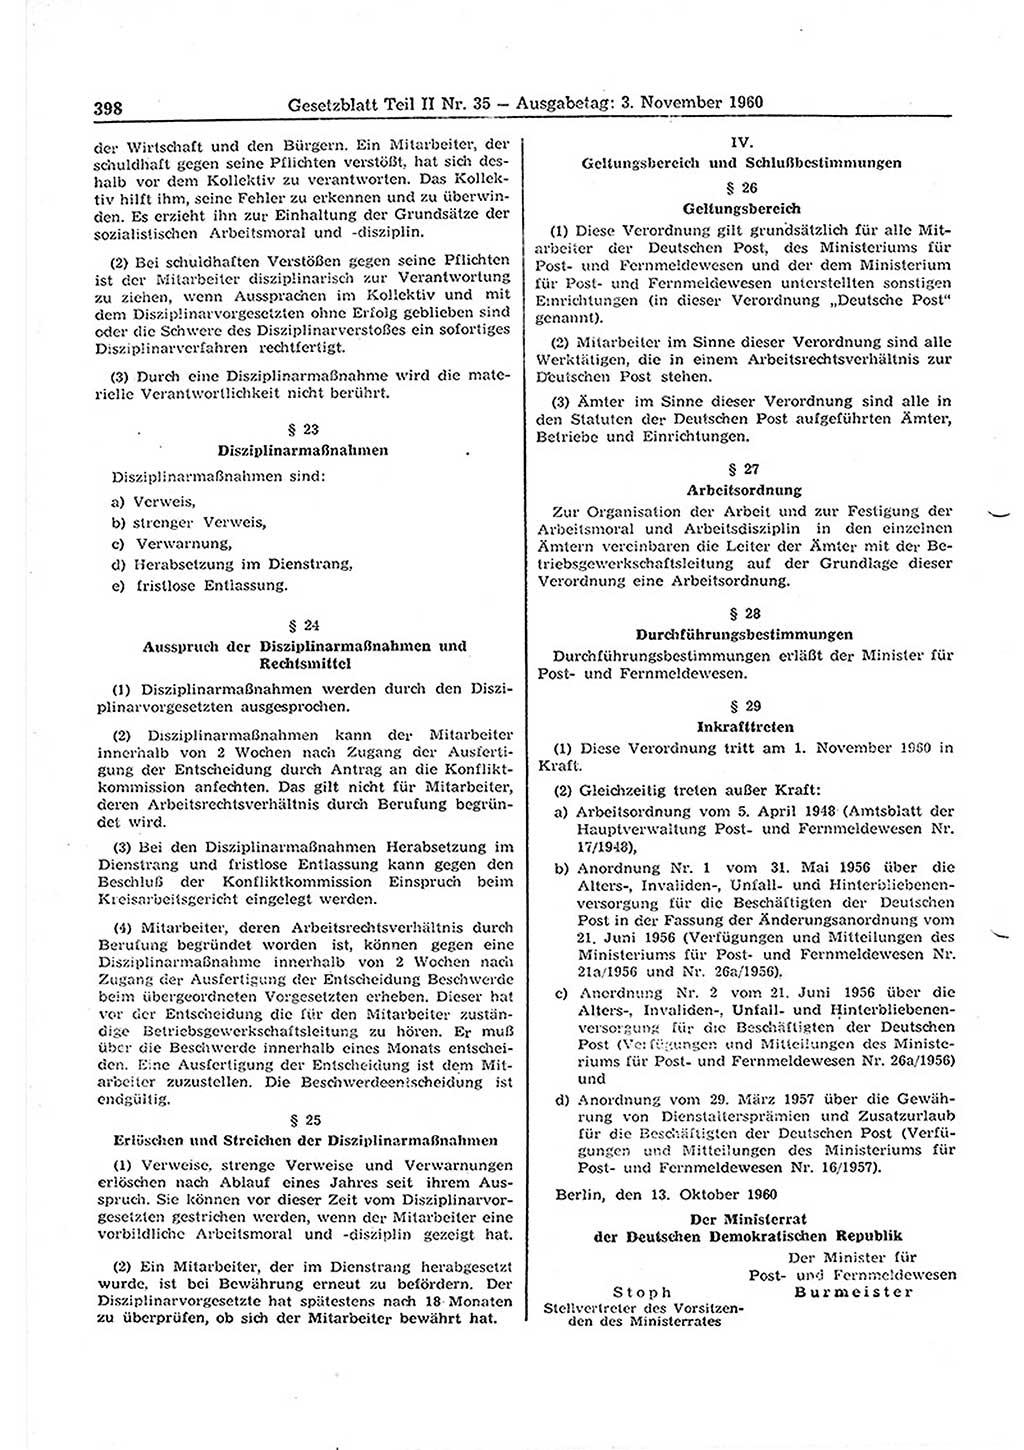 Gesetzblatt (GBl.) der Deutschen Demokratischen Republik (DDR) Teil ⅠⅠ 1960, Seite 398 (GBl. DDR ⅠⅠ 1960, S. 398)